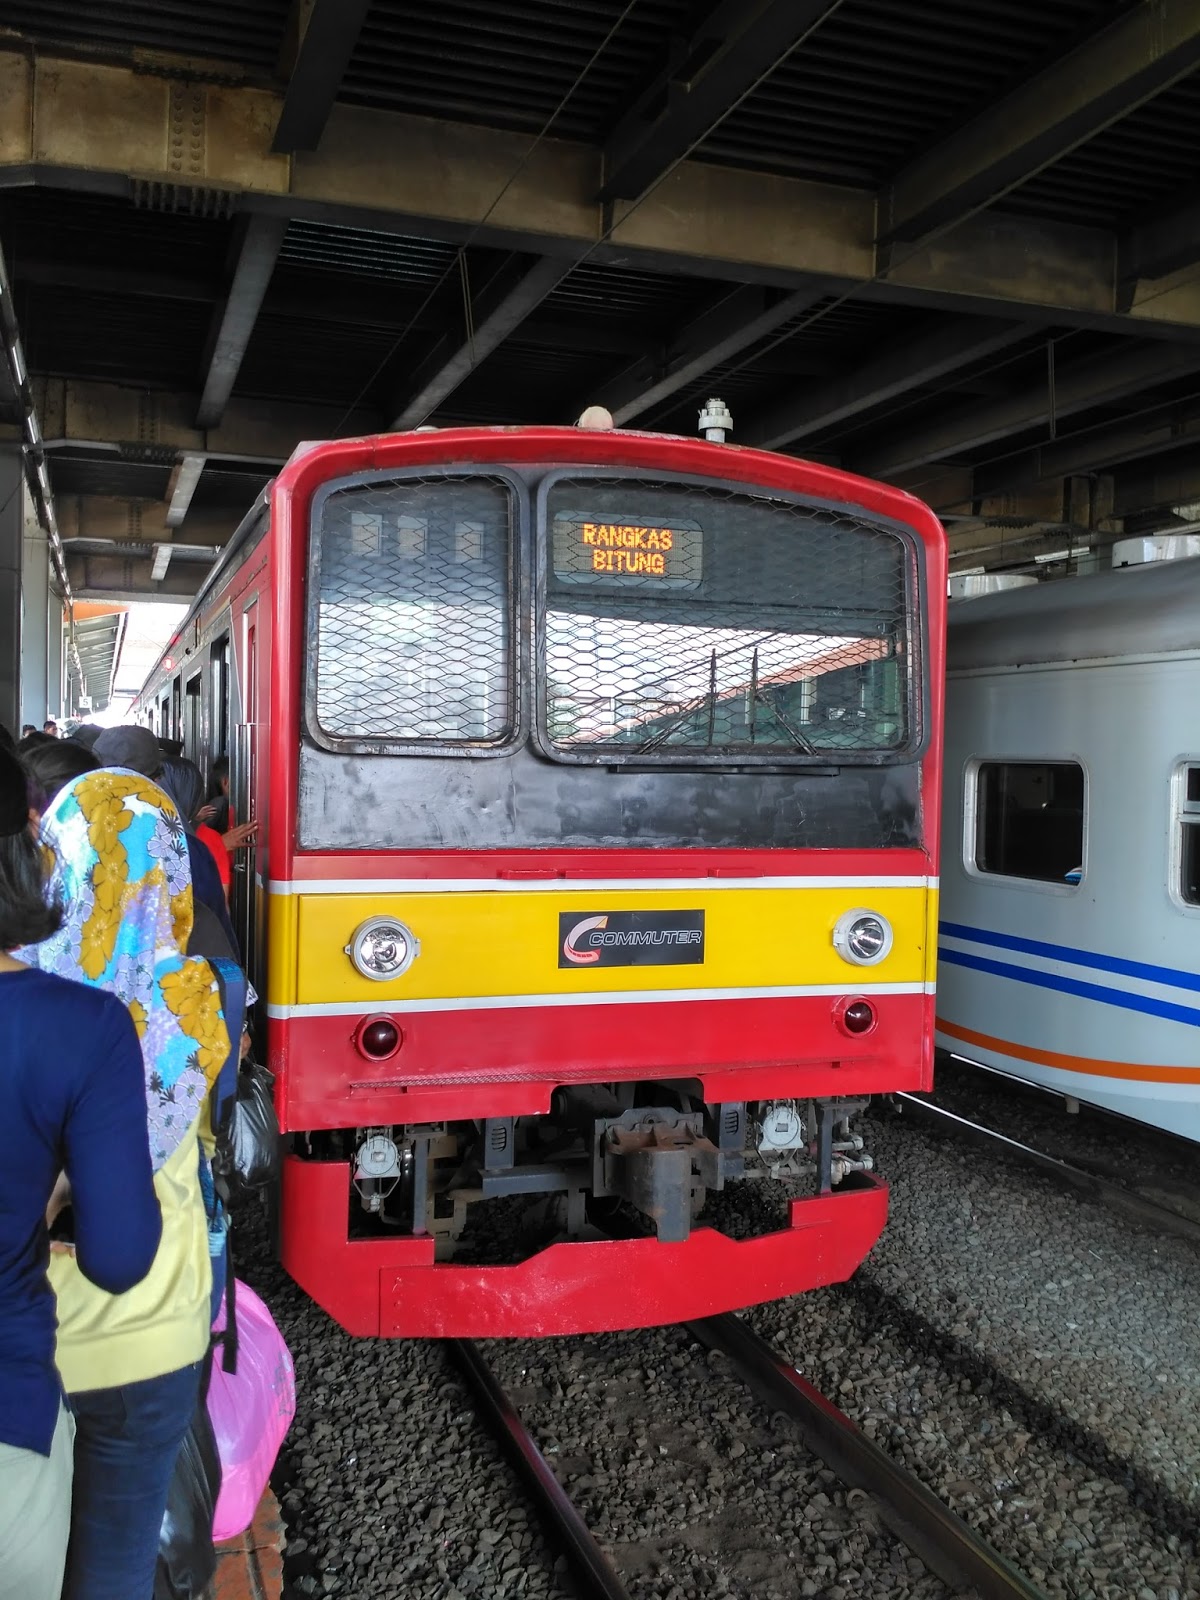 KRL Commuter Line sudah ada di Stasiun Rangkasbitung | sumber: regest.web.id